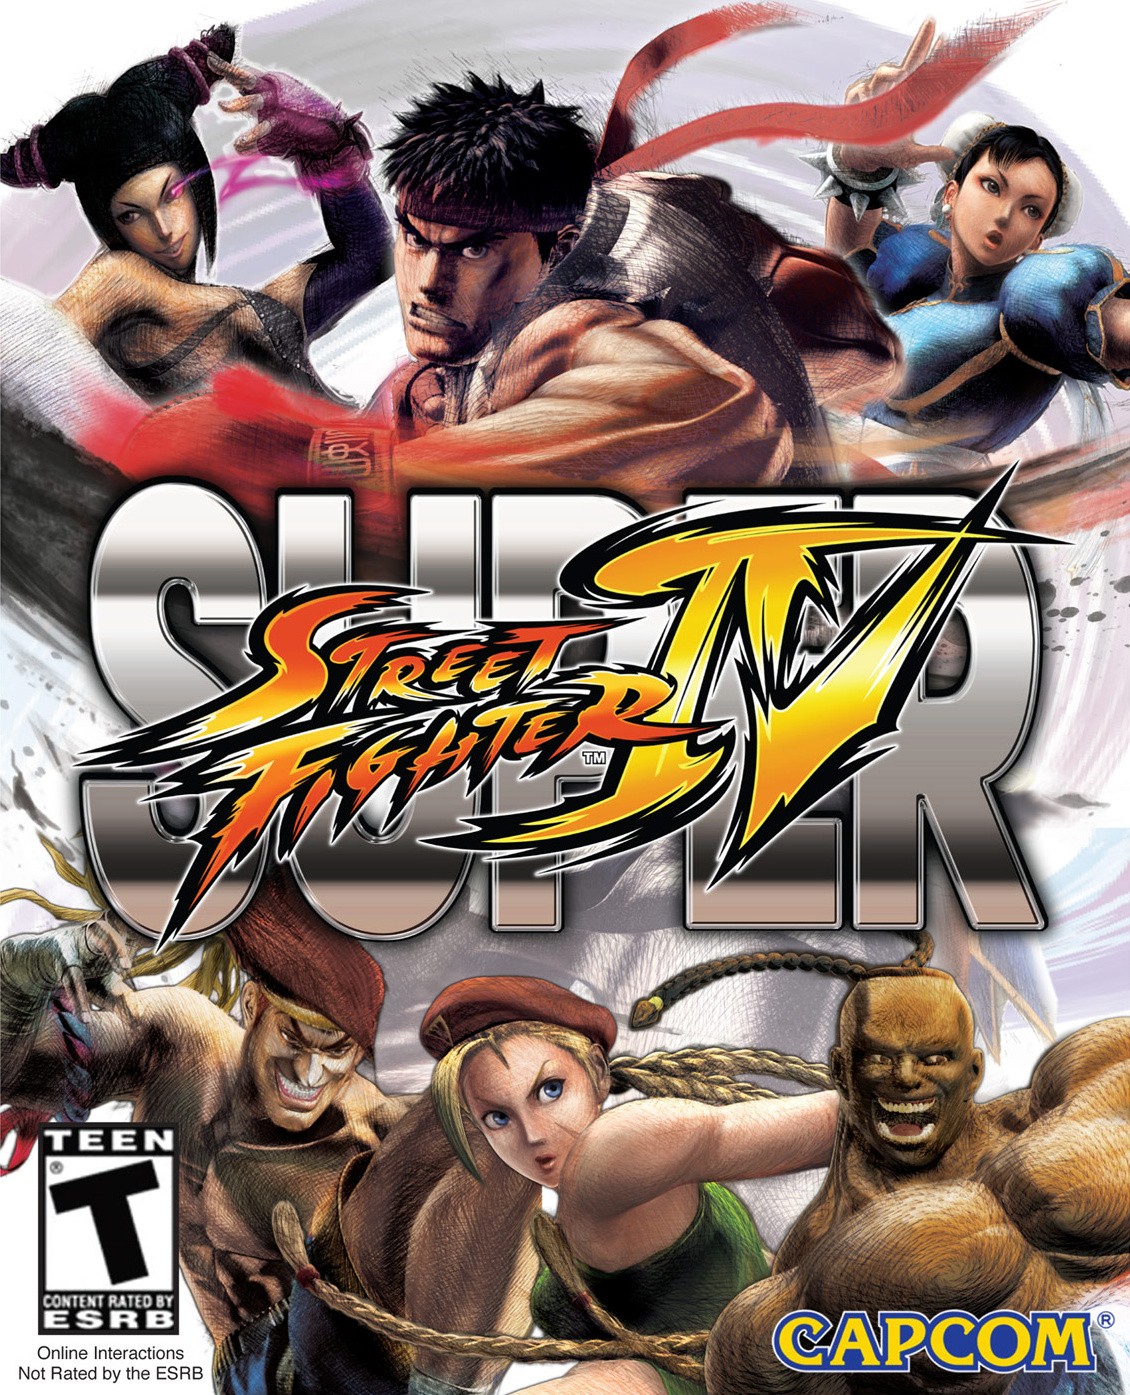 Capa do jogo Super Street Fighter IV